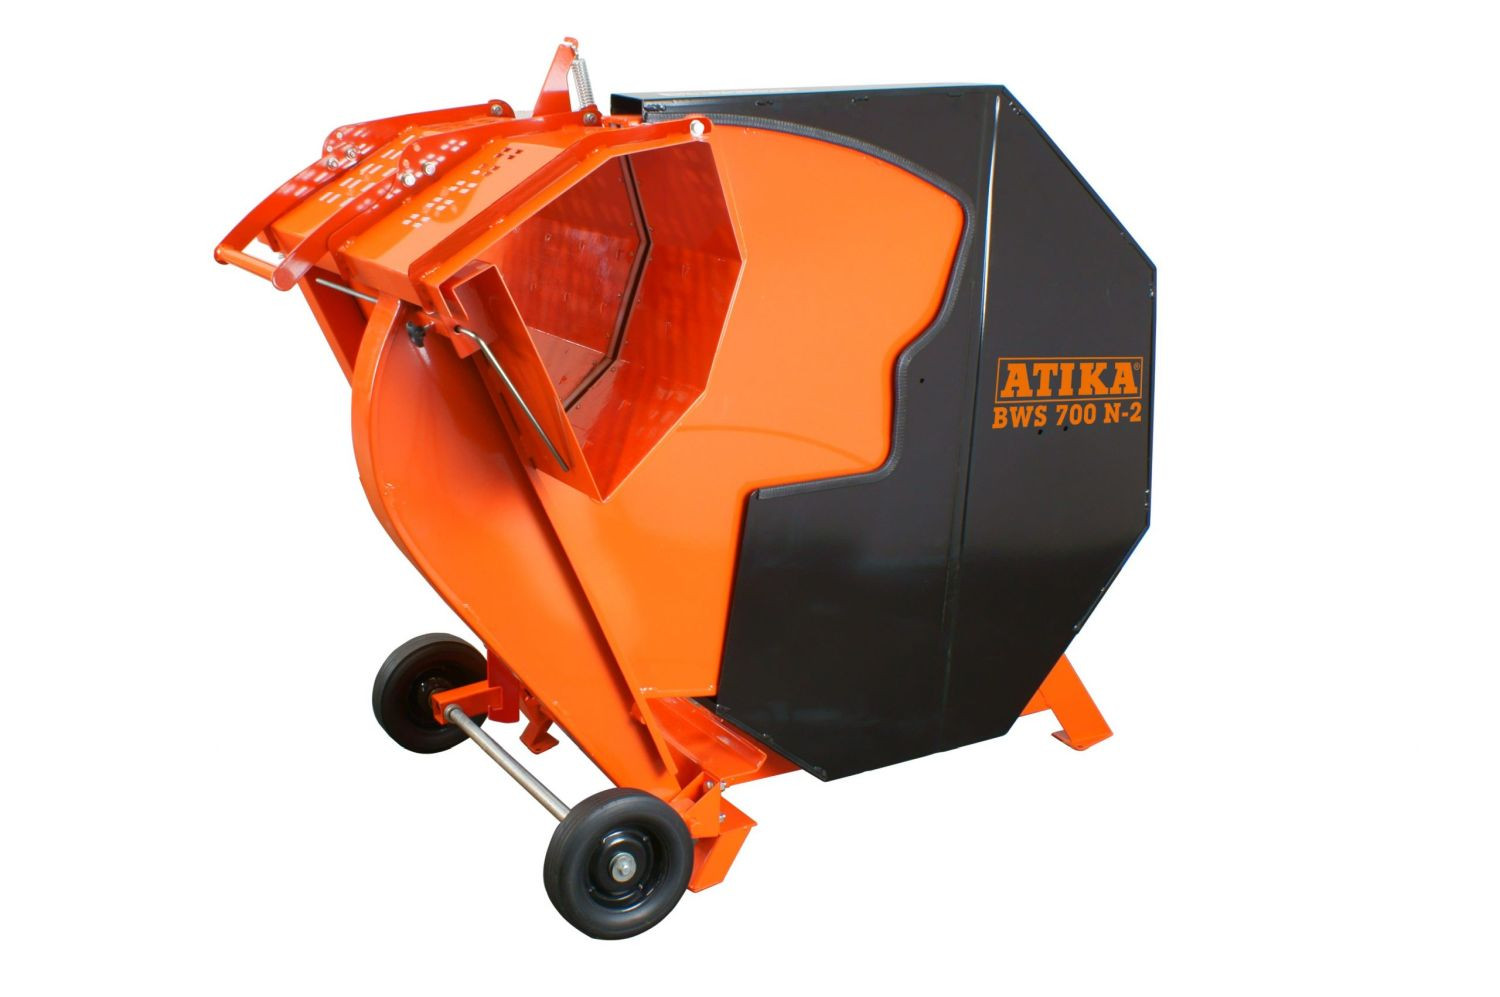 ATIKA Brennholz-Wippkreissäge  BWS 700 N-2, kraftvoll, leistungsstark, sicher und robust sind die Merkmale dieser Säge